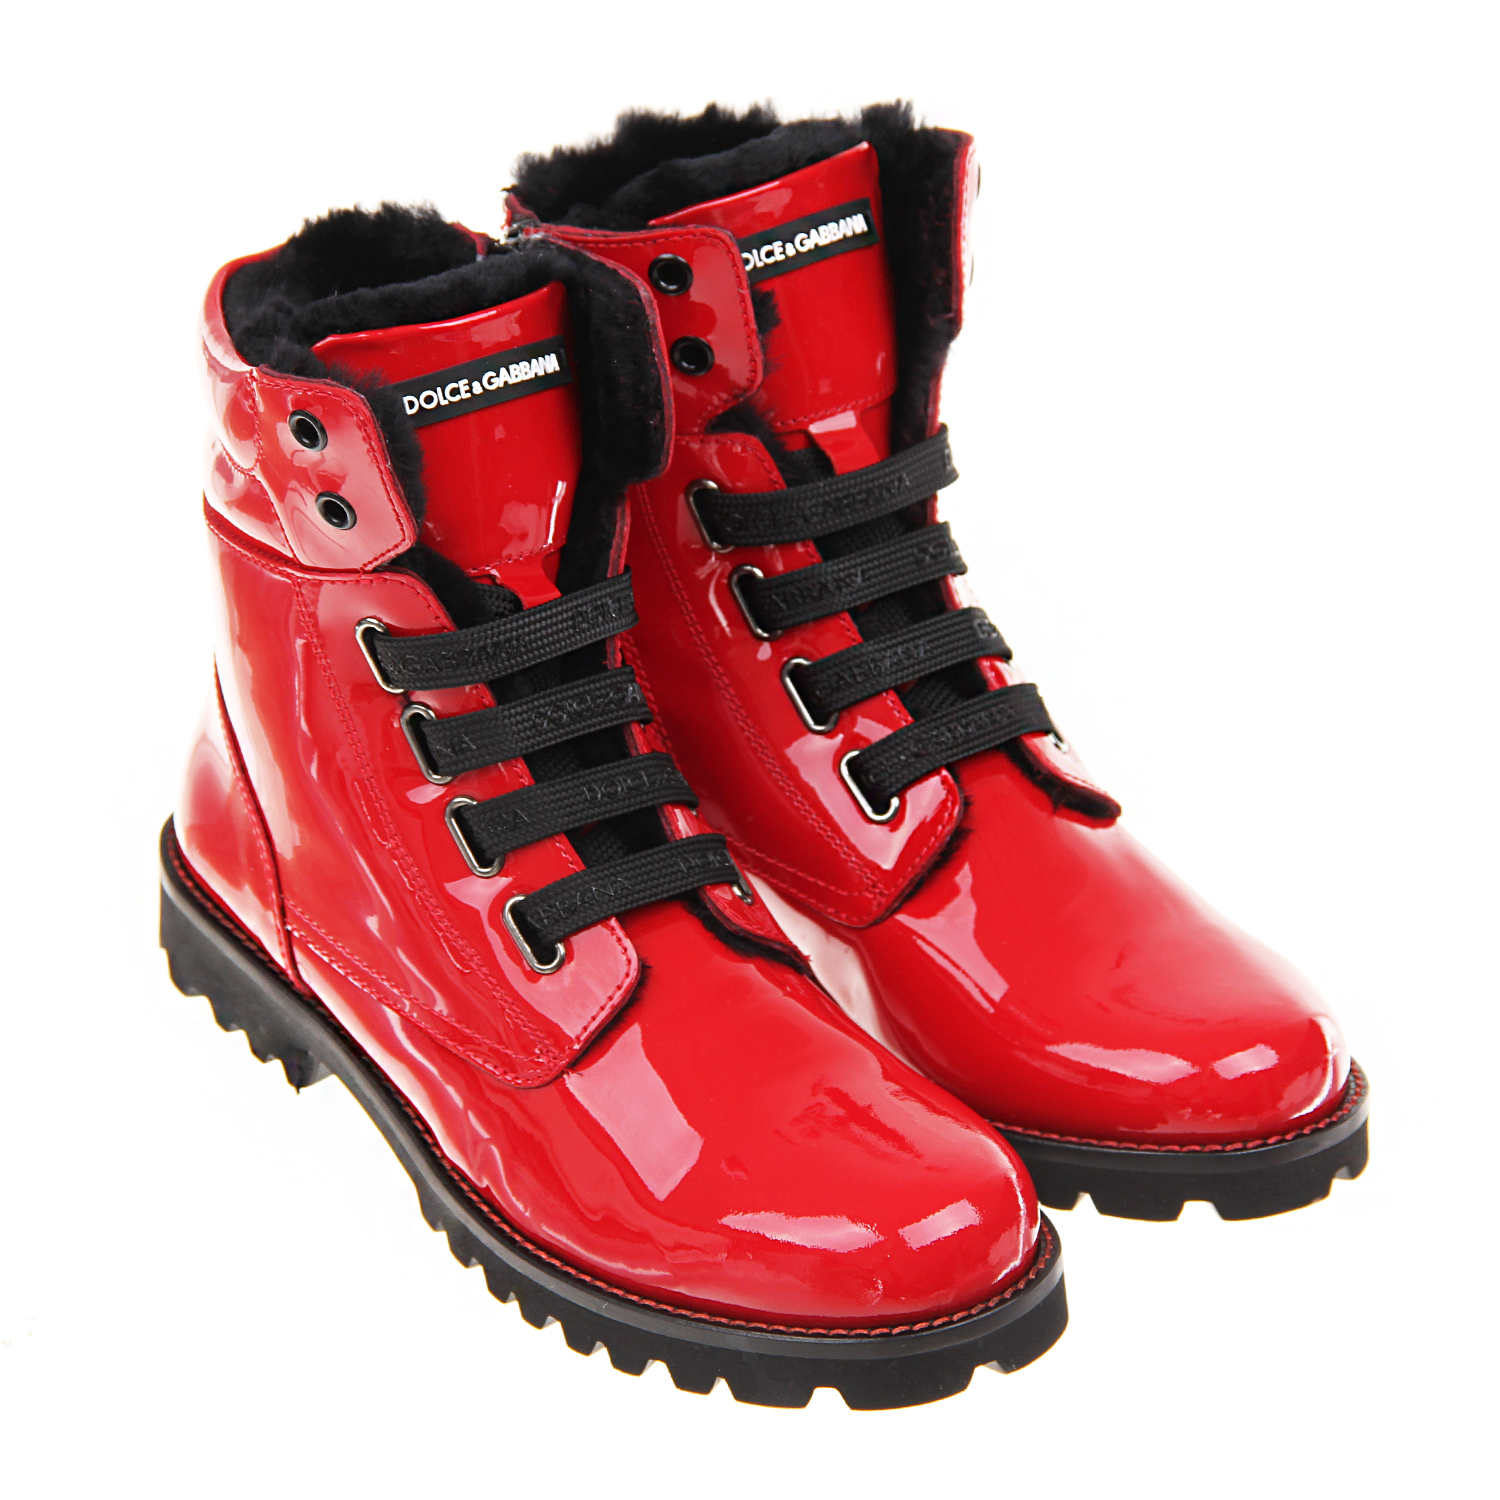 Красные лакированные ботинки с подкладкой из меха Dolce&Gabbana